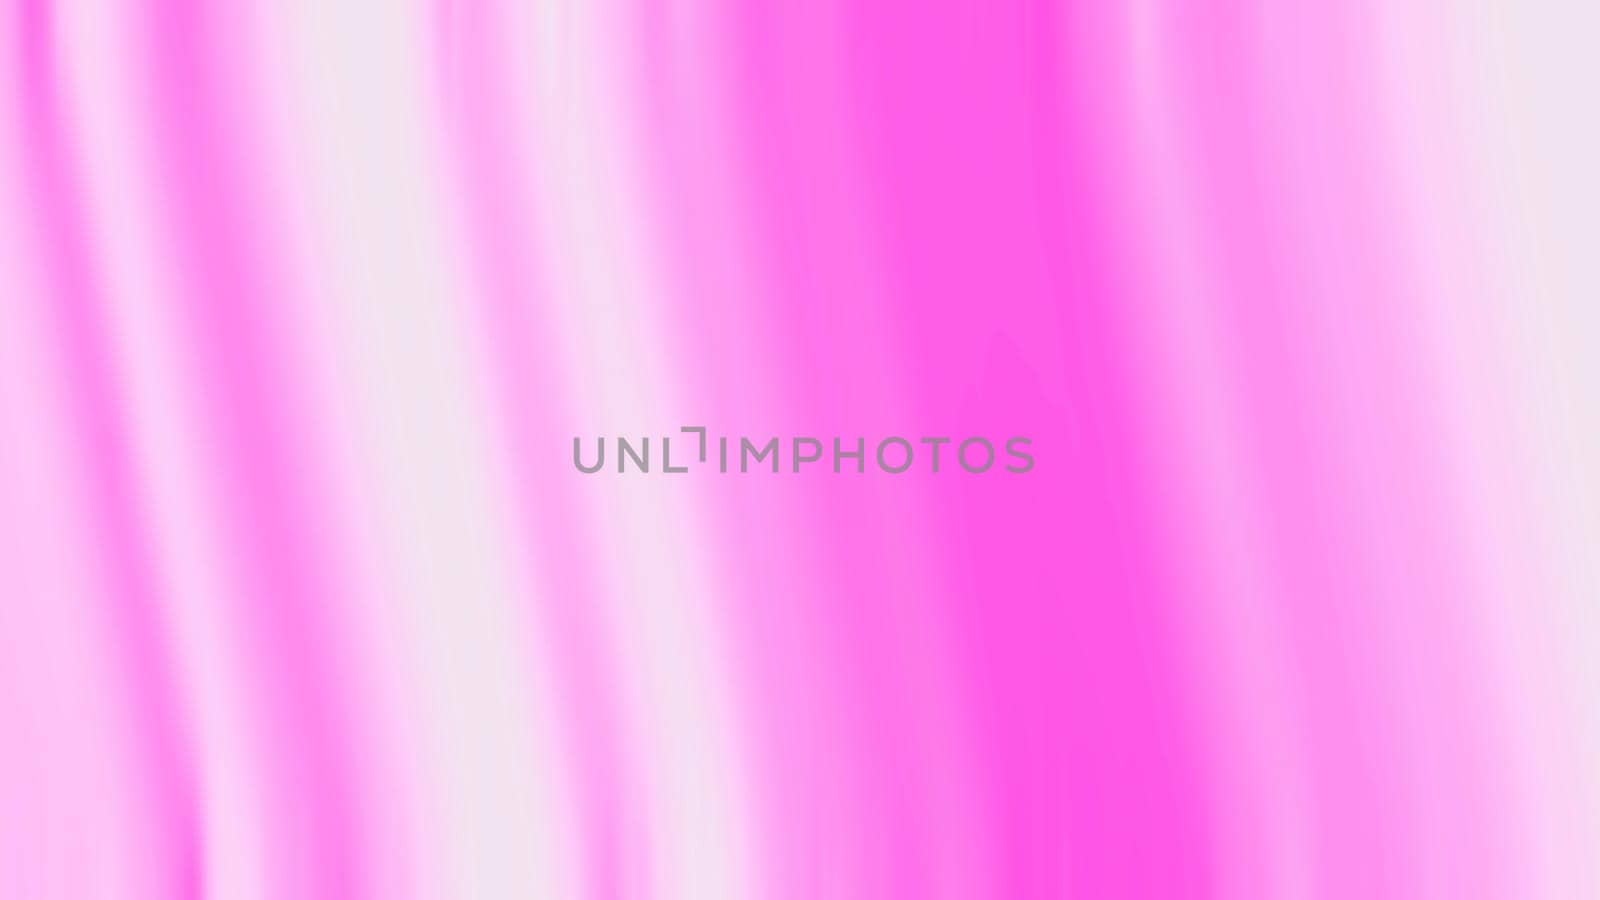 Blur bright pink and white strip gradient background